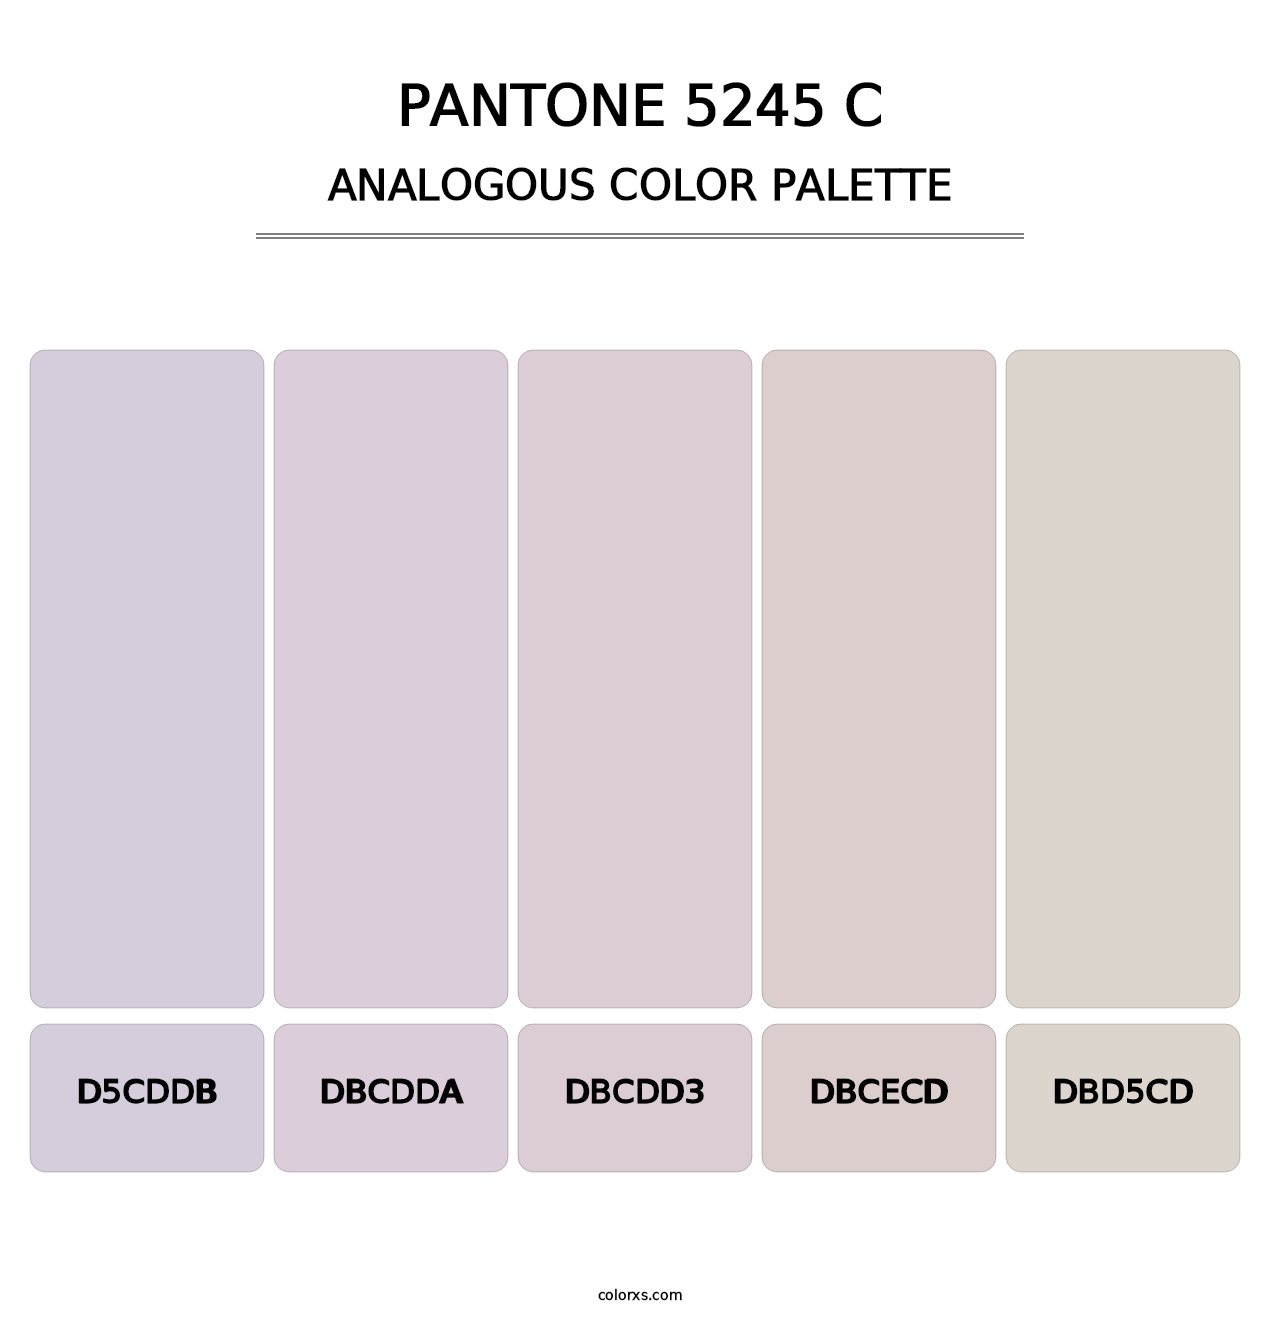 PANTONE 5245 C - Analogous Color Palette